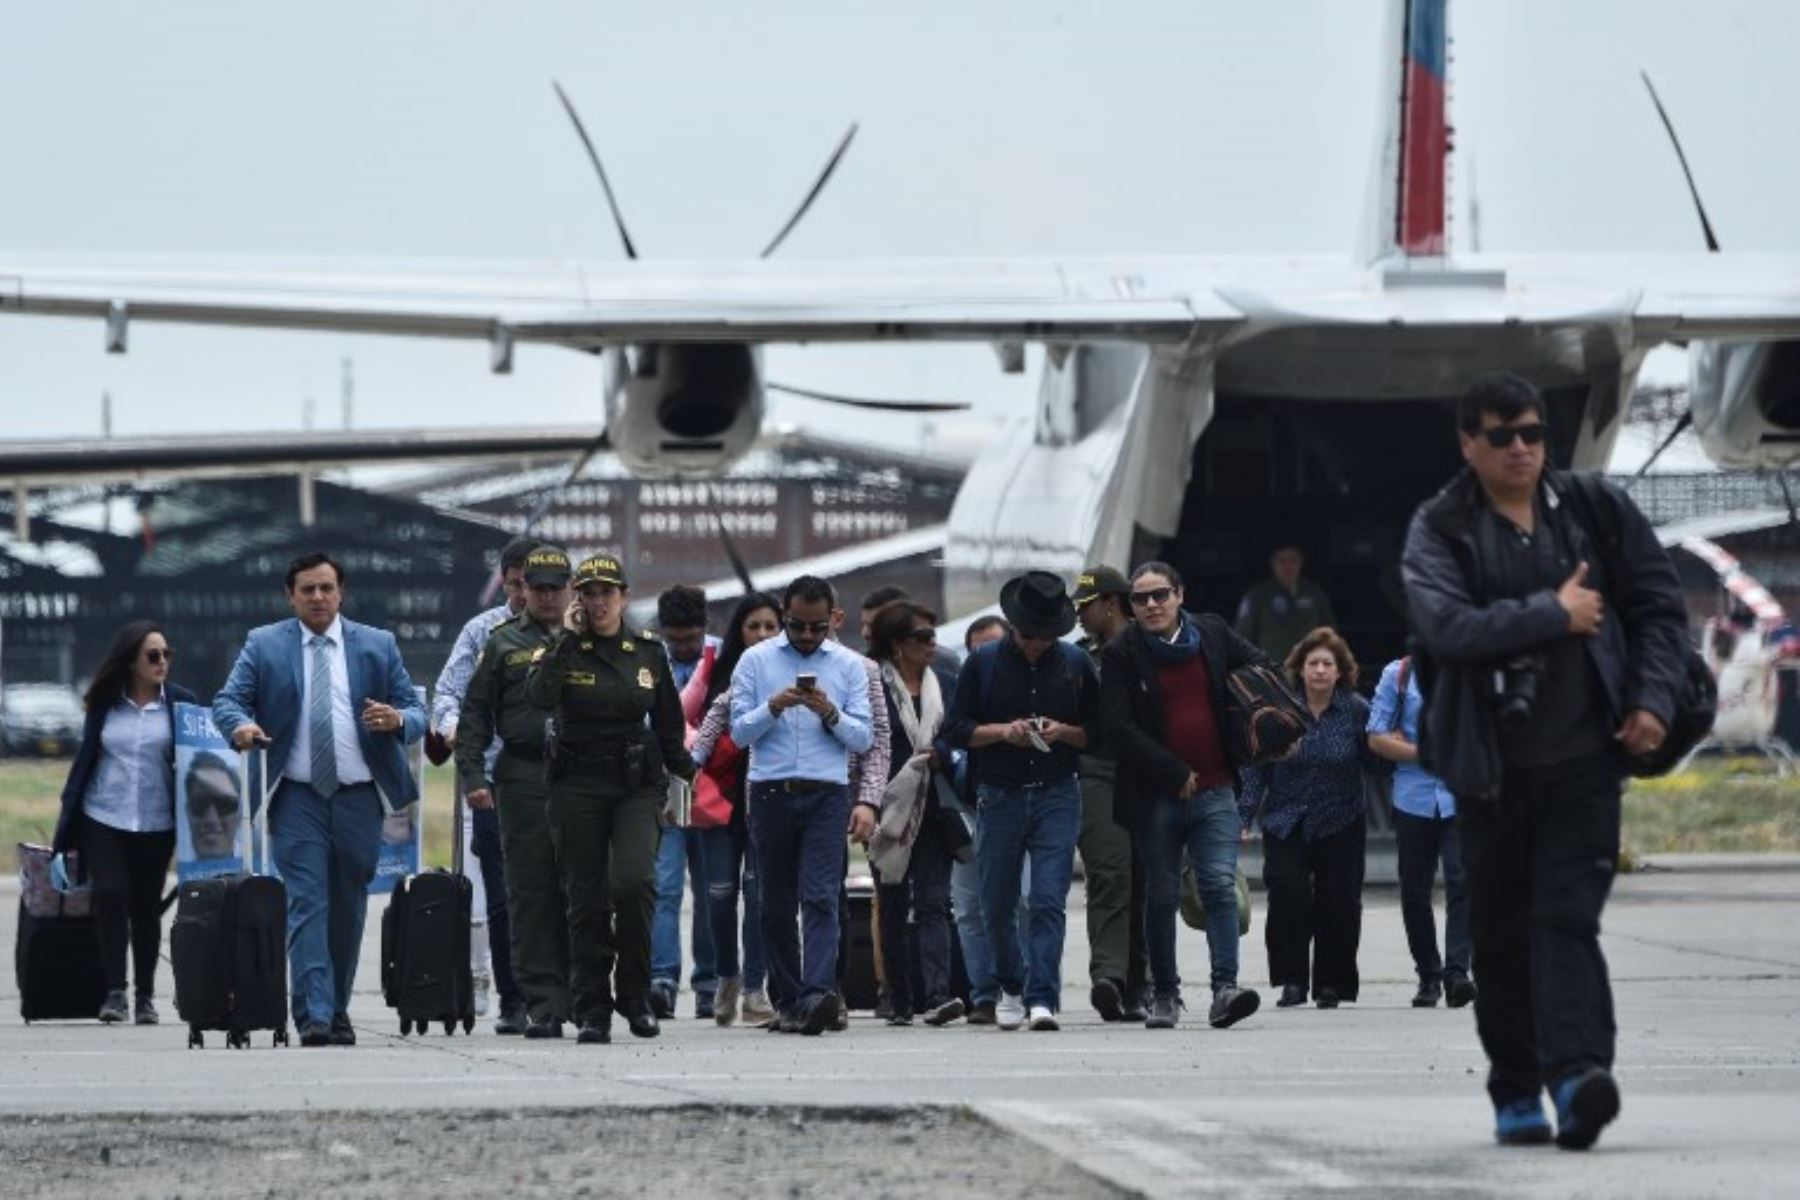 Familiares de los periodistas ecuatorianos, llegan al aeropuerto Alfonso Bonilla Aragón en Palmira, Colombia, el 22 de junio de 2018, para identificar sus cuerpos.Foto:AFP